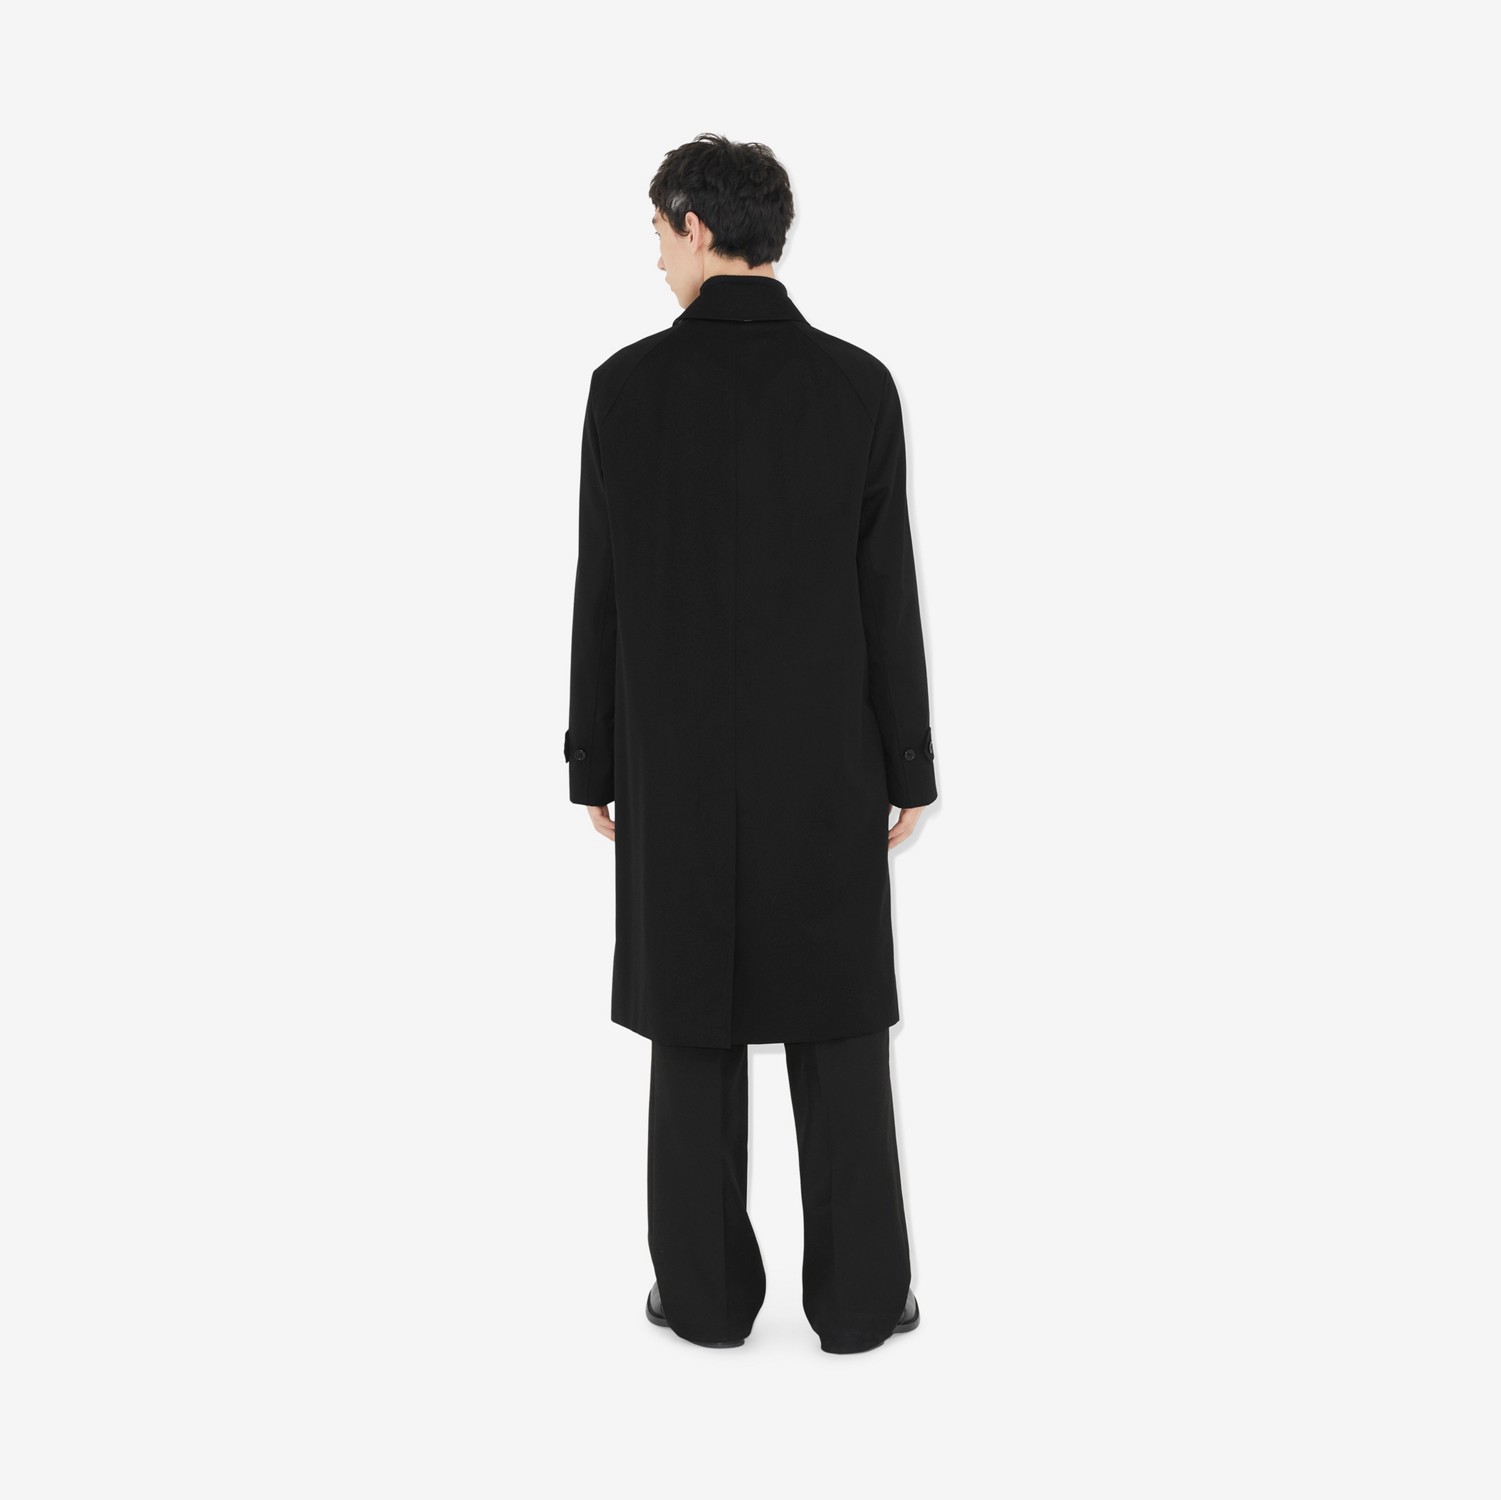 卡姆登版型 – 长款 Heritage 轻便大衣 (黑色) - 男士 | Burberry® 博柏利官网